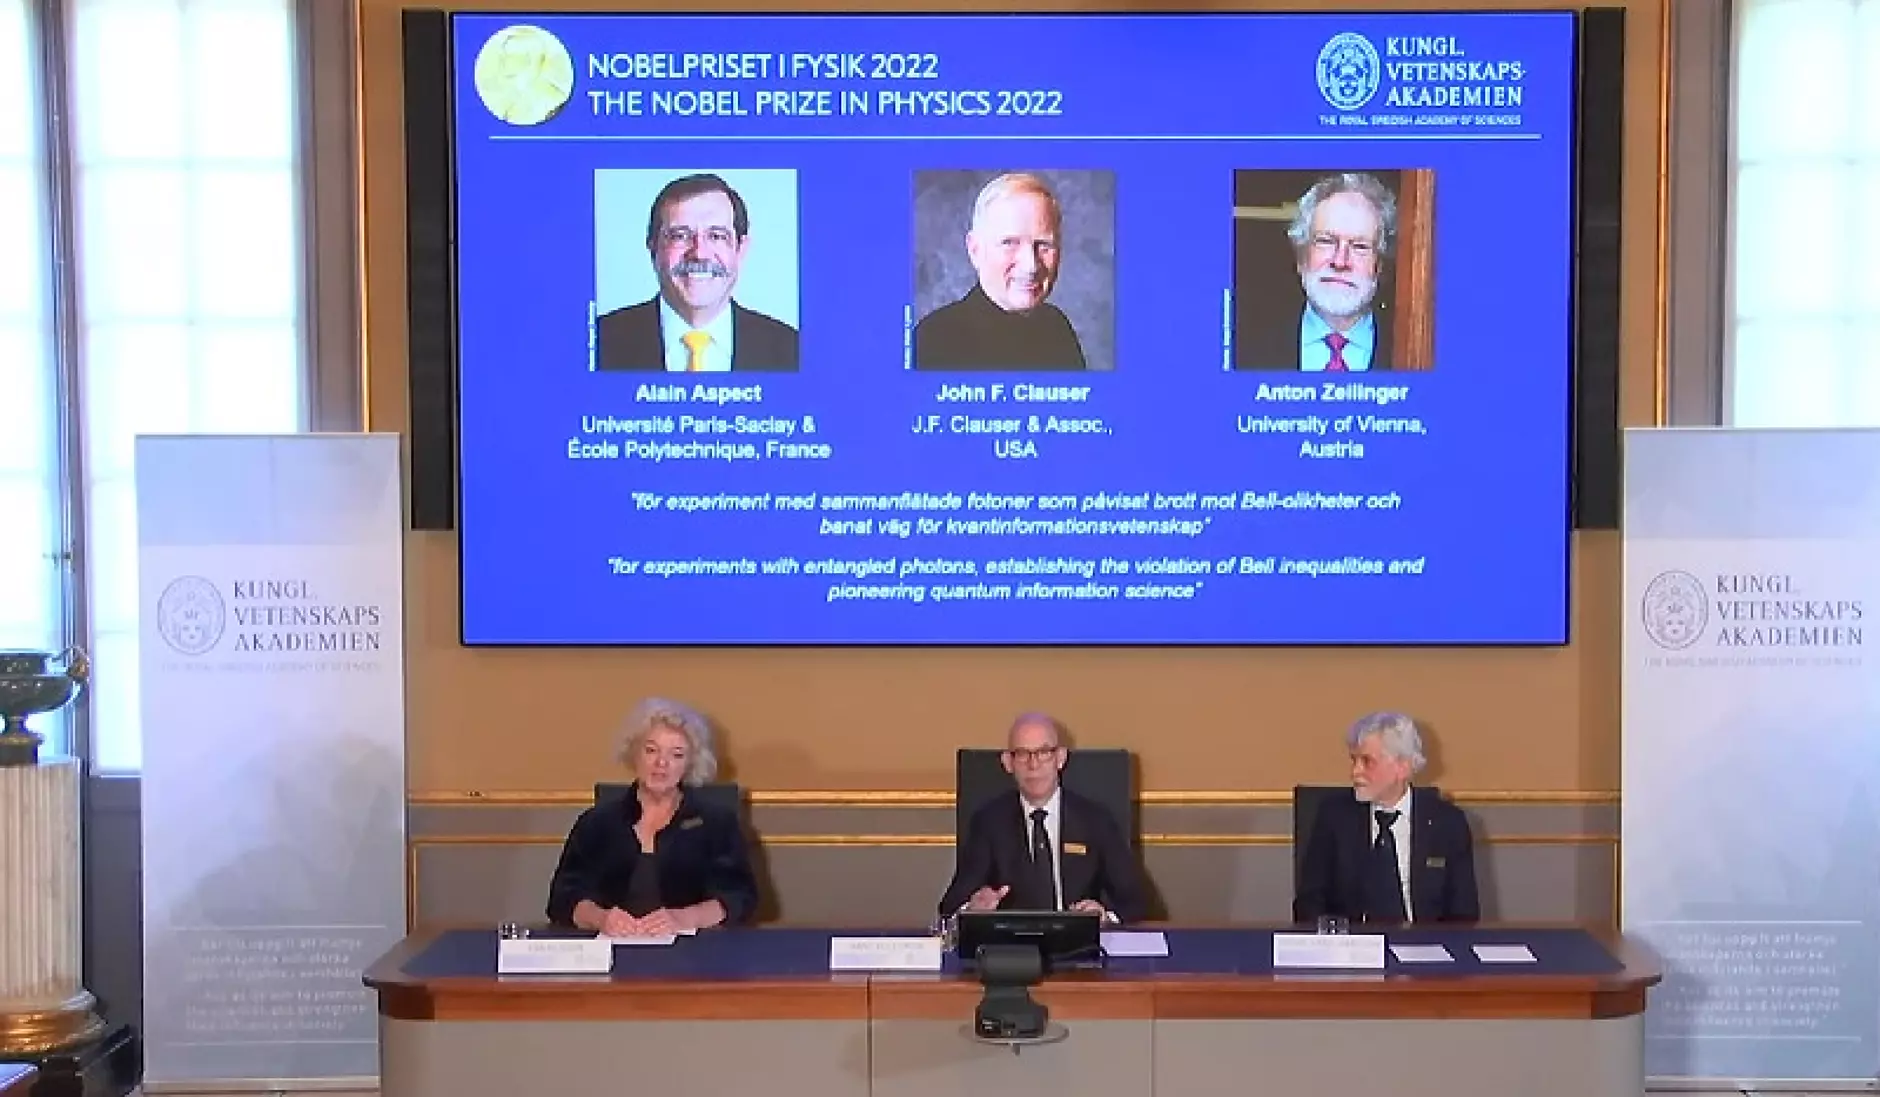 Трима учени си поделят Нобеловата награда за физика за 2022 г.